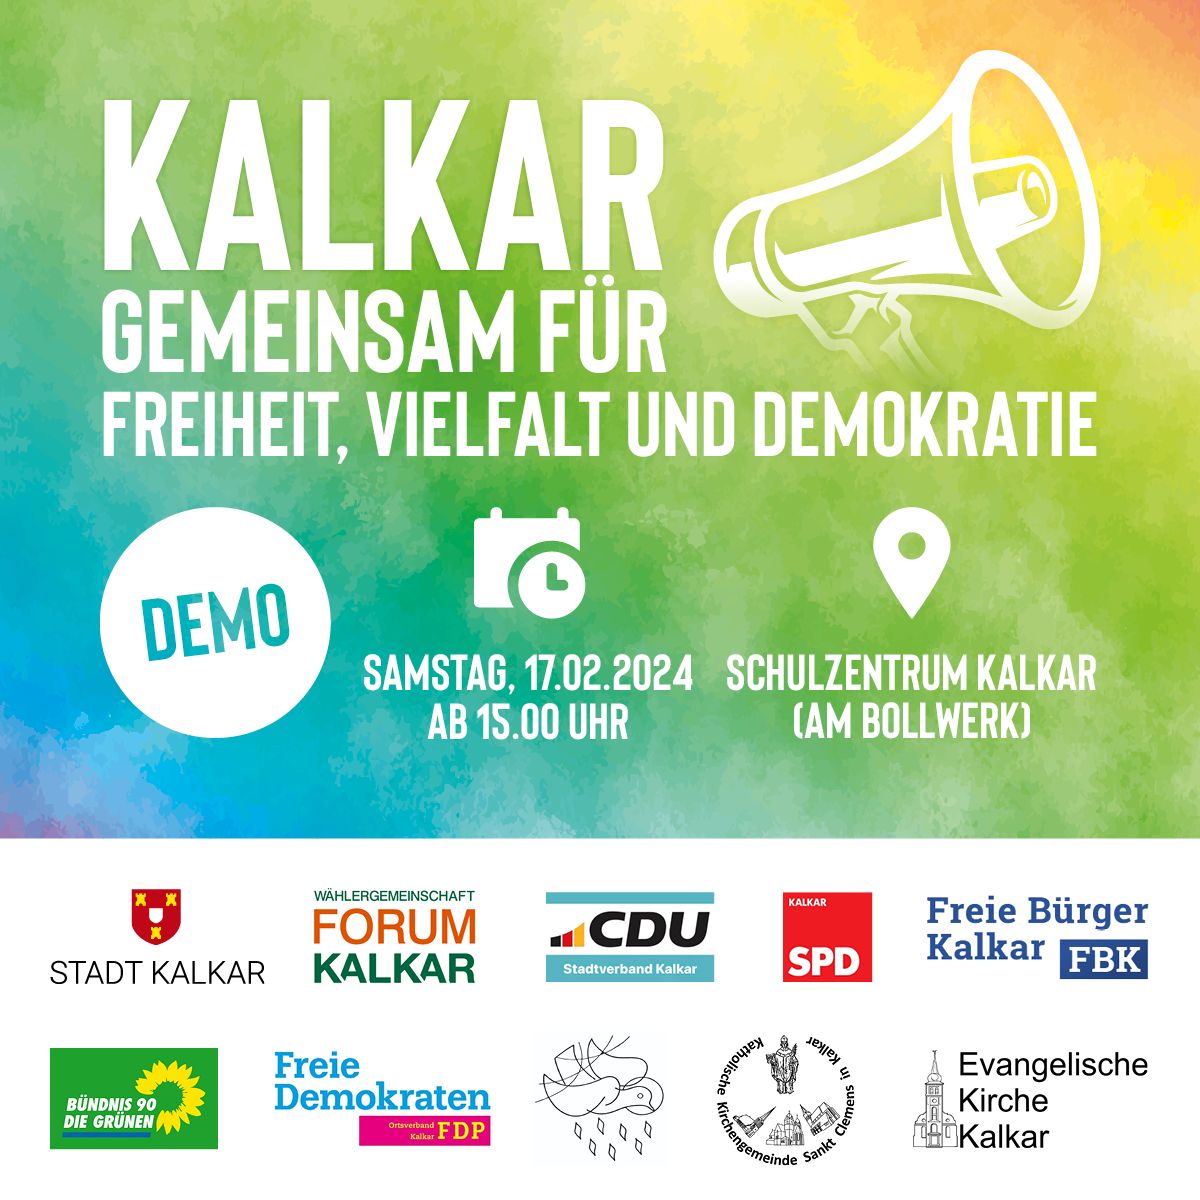 Kalkar – gemeinsam für Freiheit, Vielfalt und Demokratie!